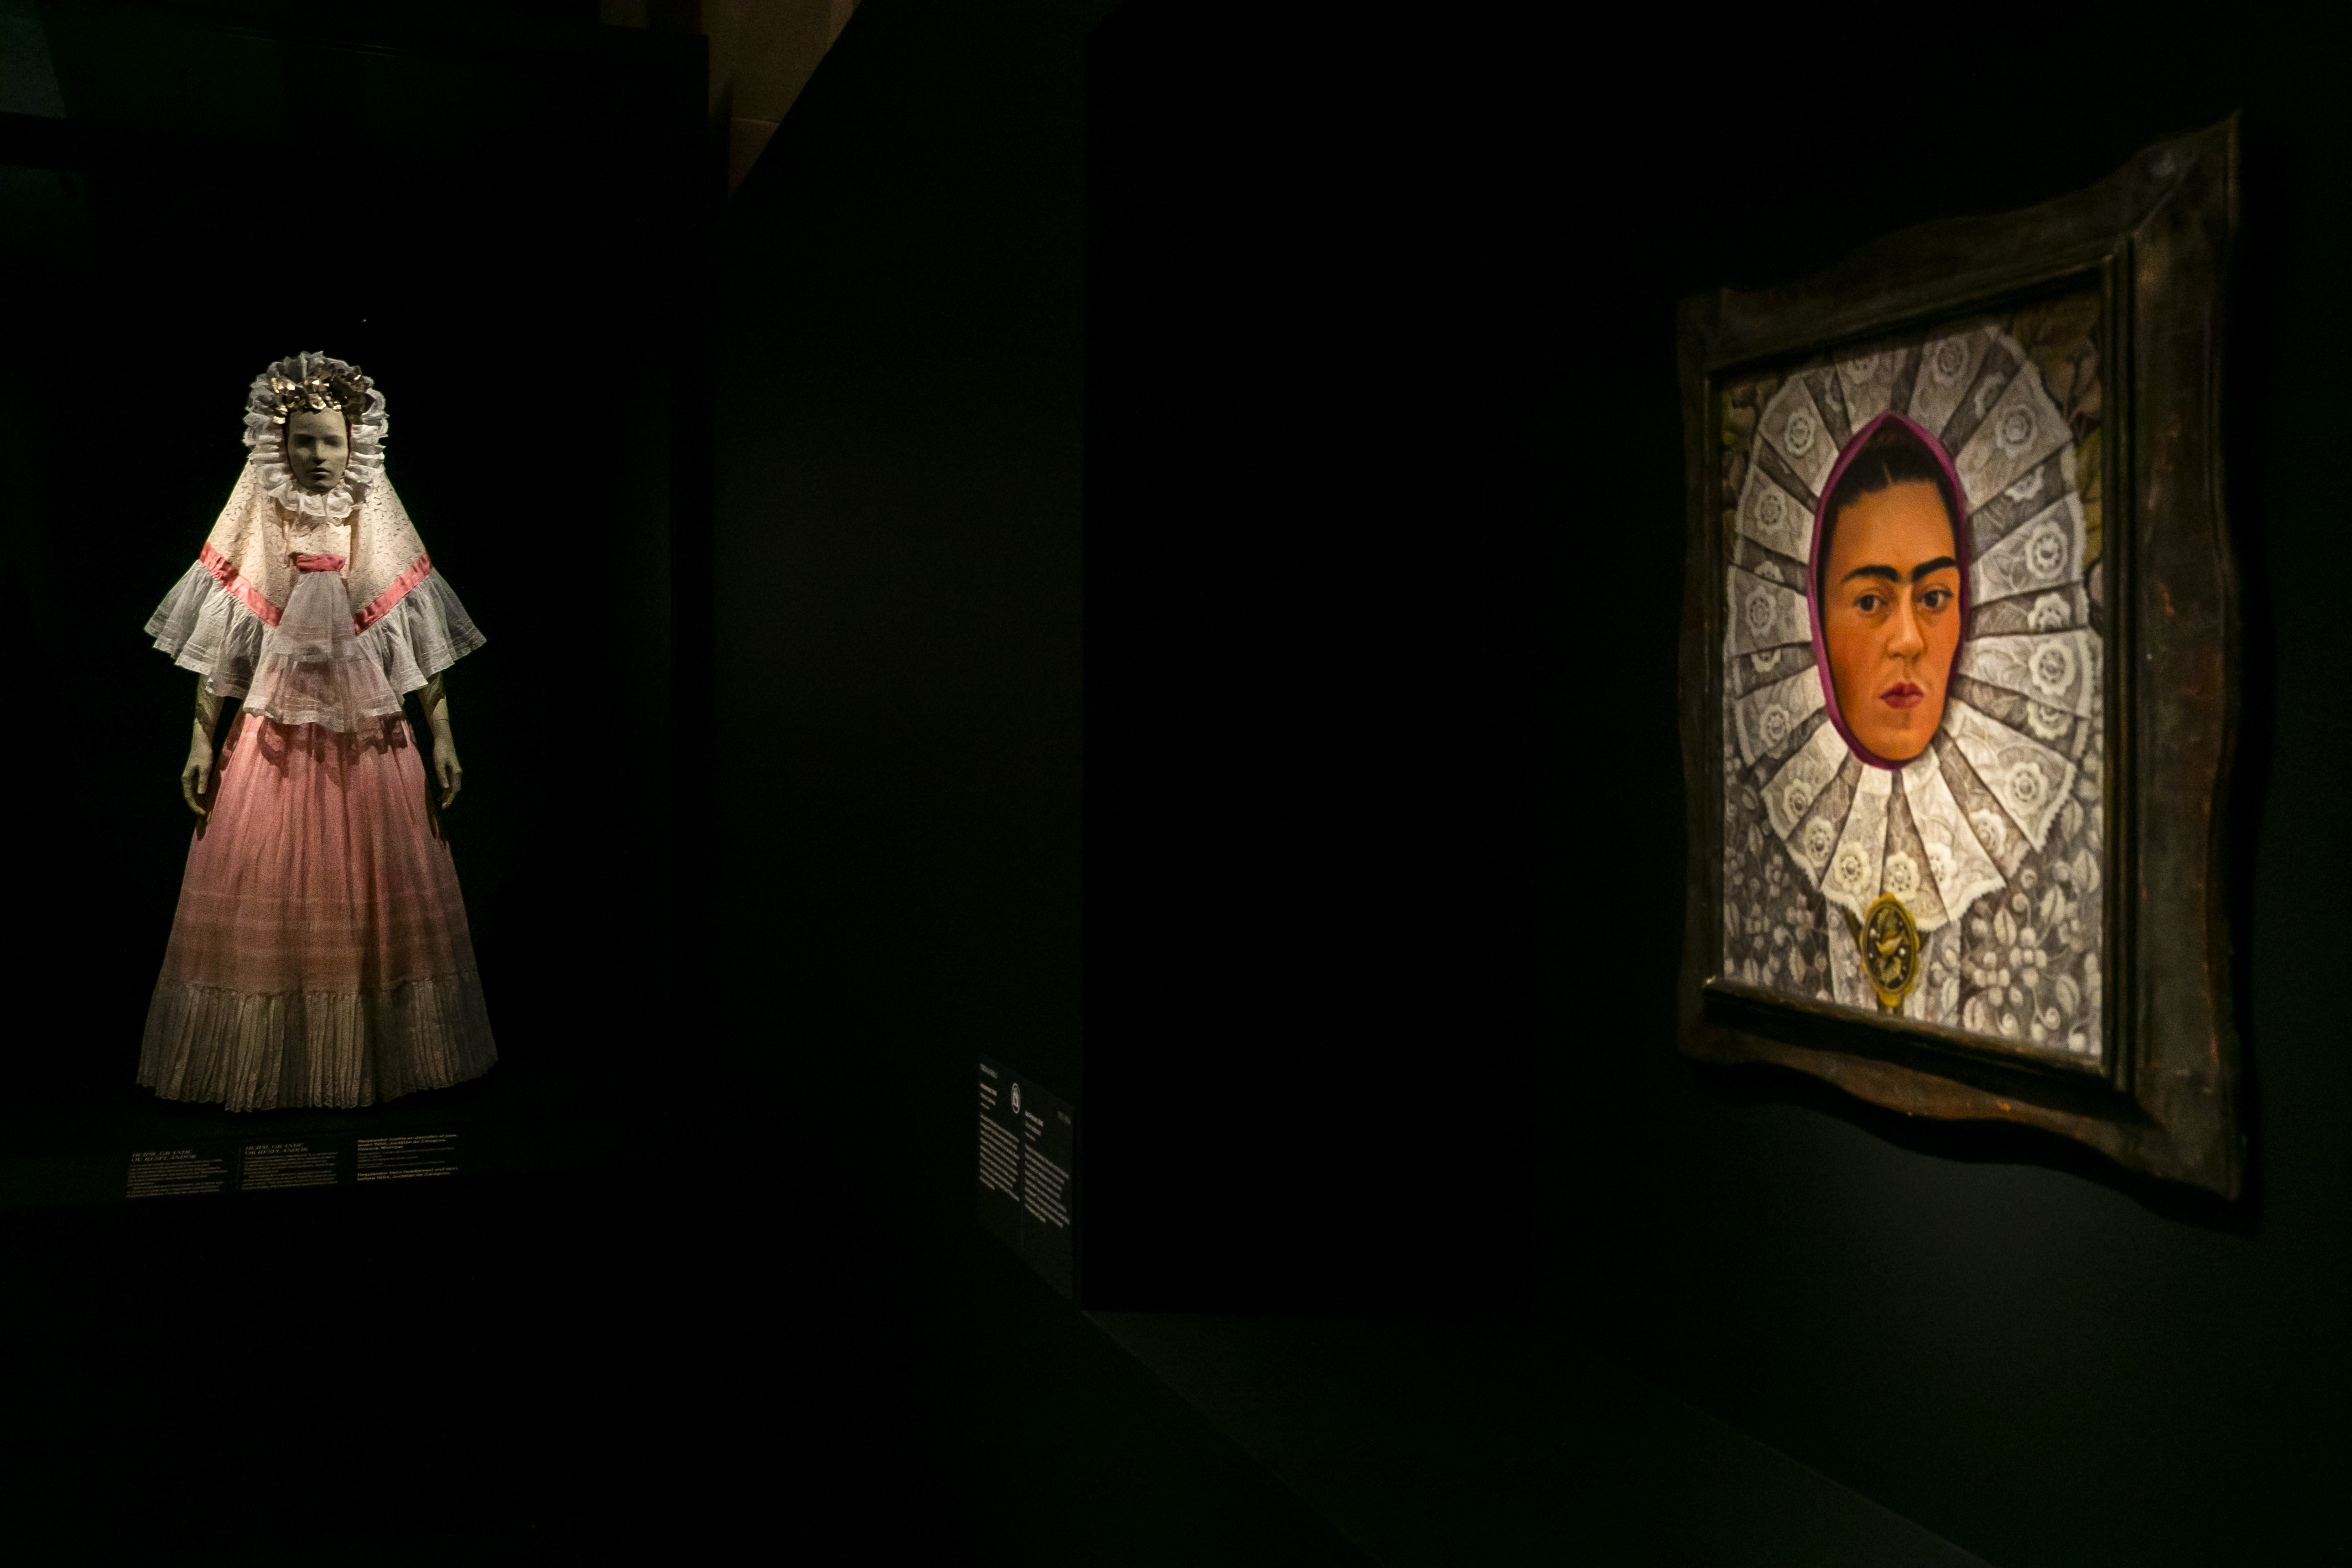 Frida Kahlo icona di stile. A Parigi un viaggio oltre le apparenze - Mondo  